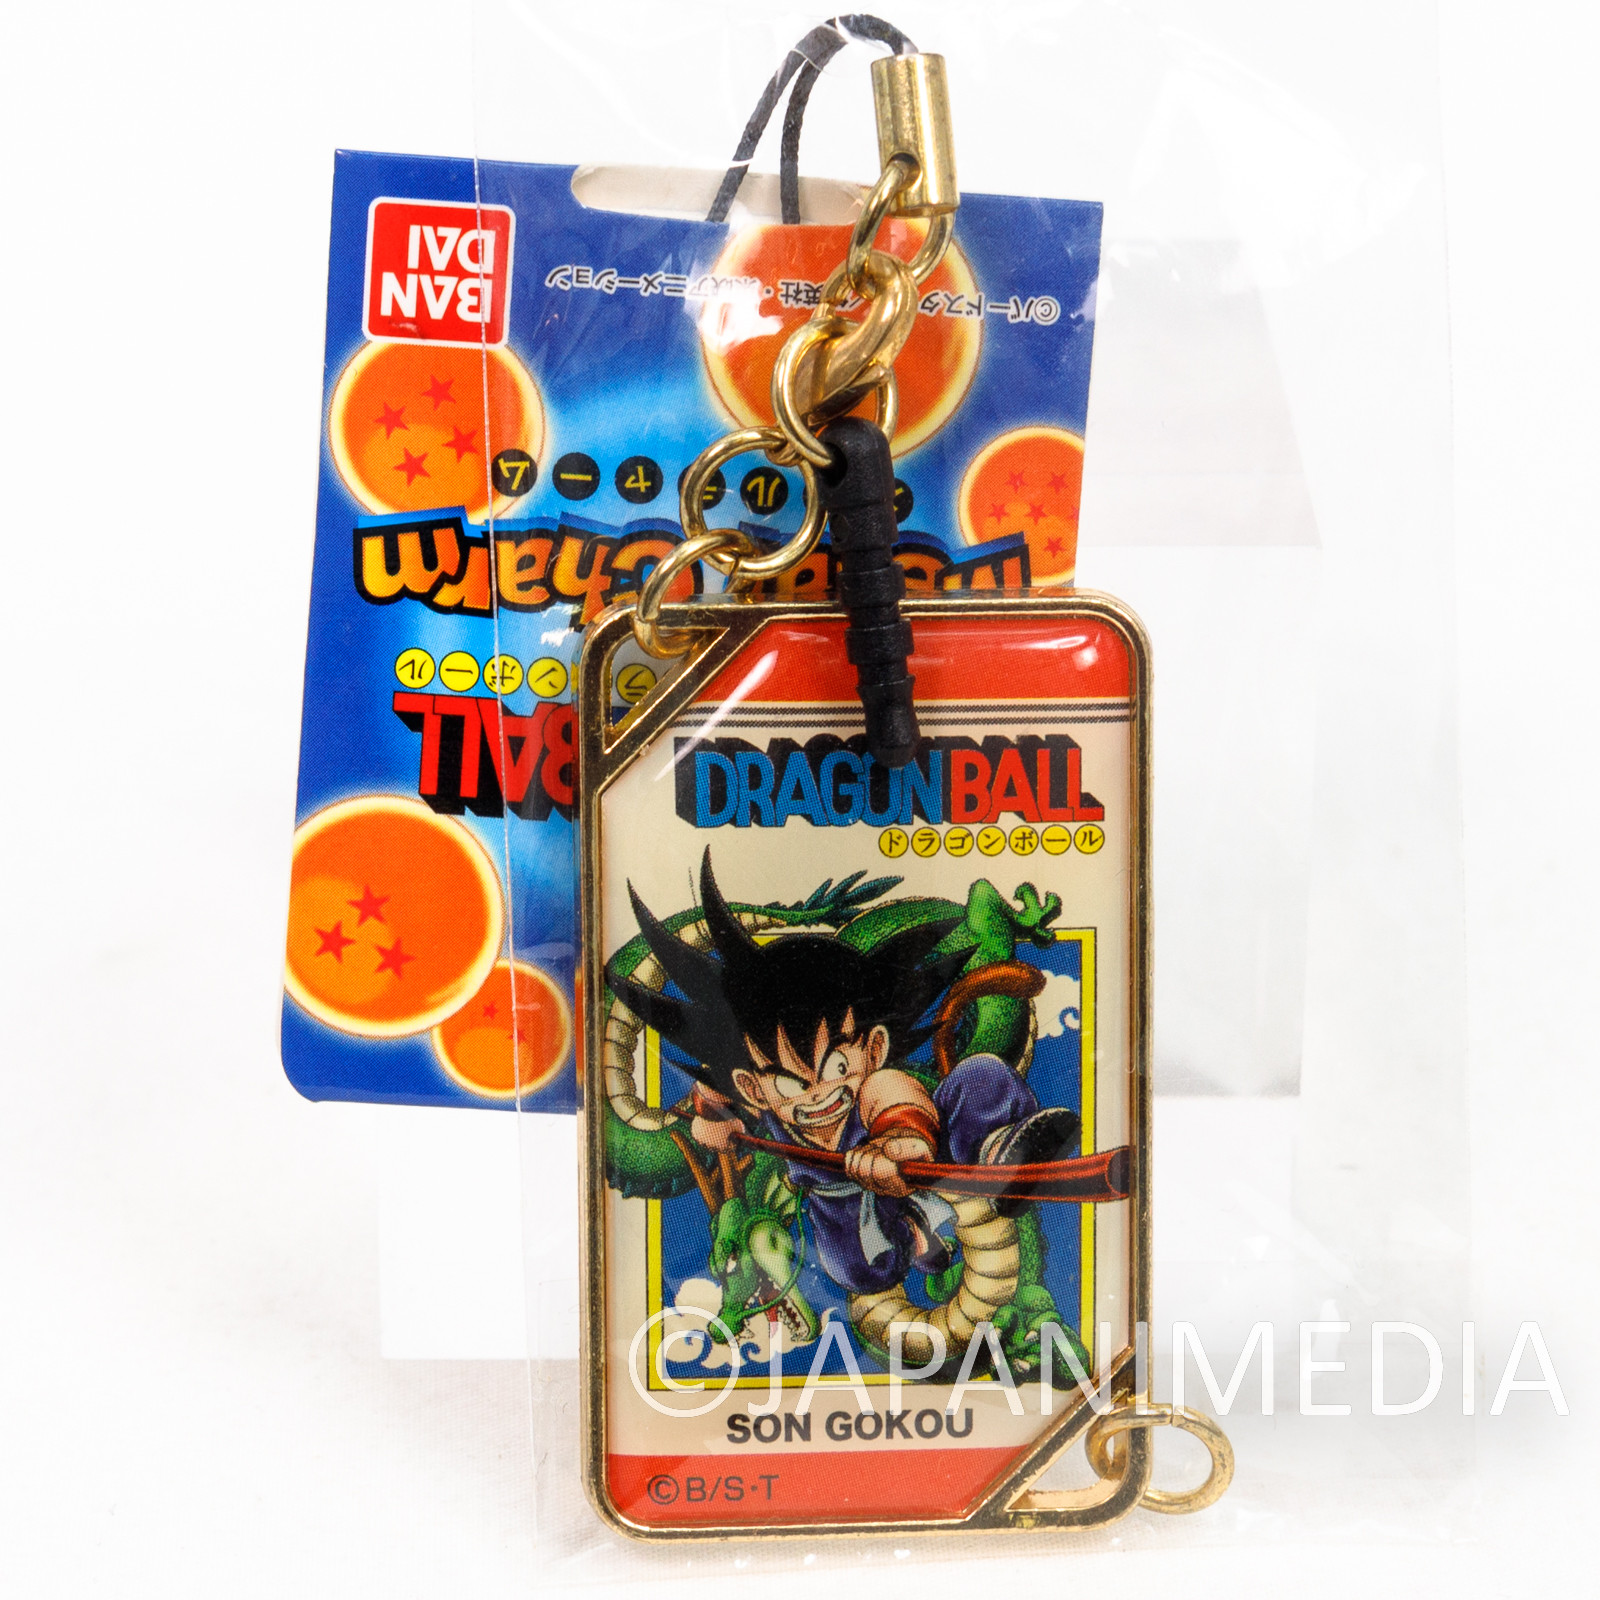 (Discolored) Dragon Ball Z Comics Jacket Type Metal Charm Strap Gokou Boy Ver.